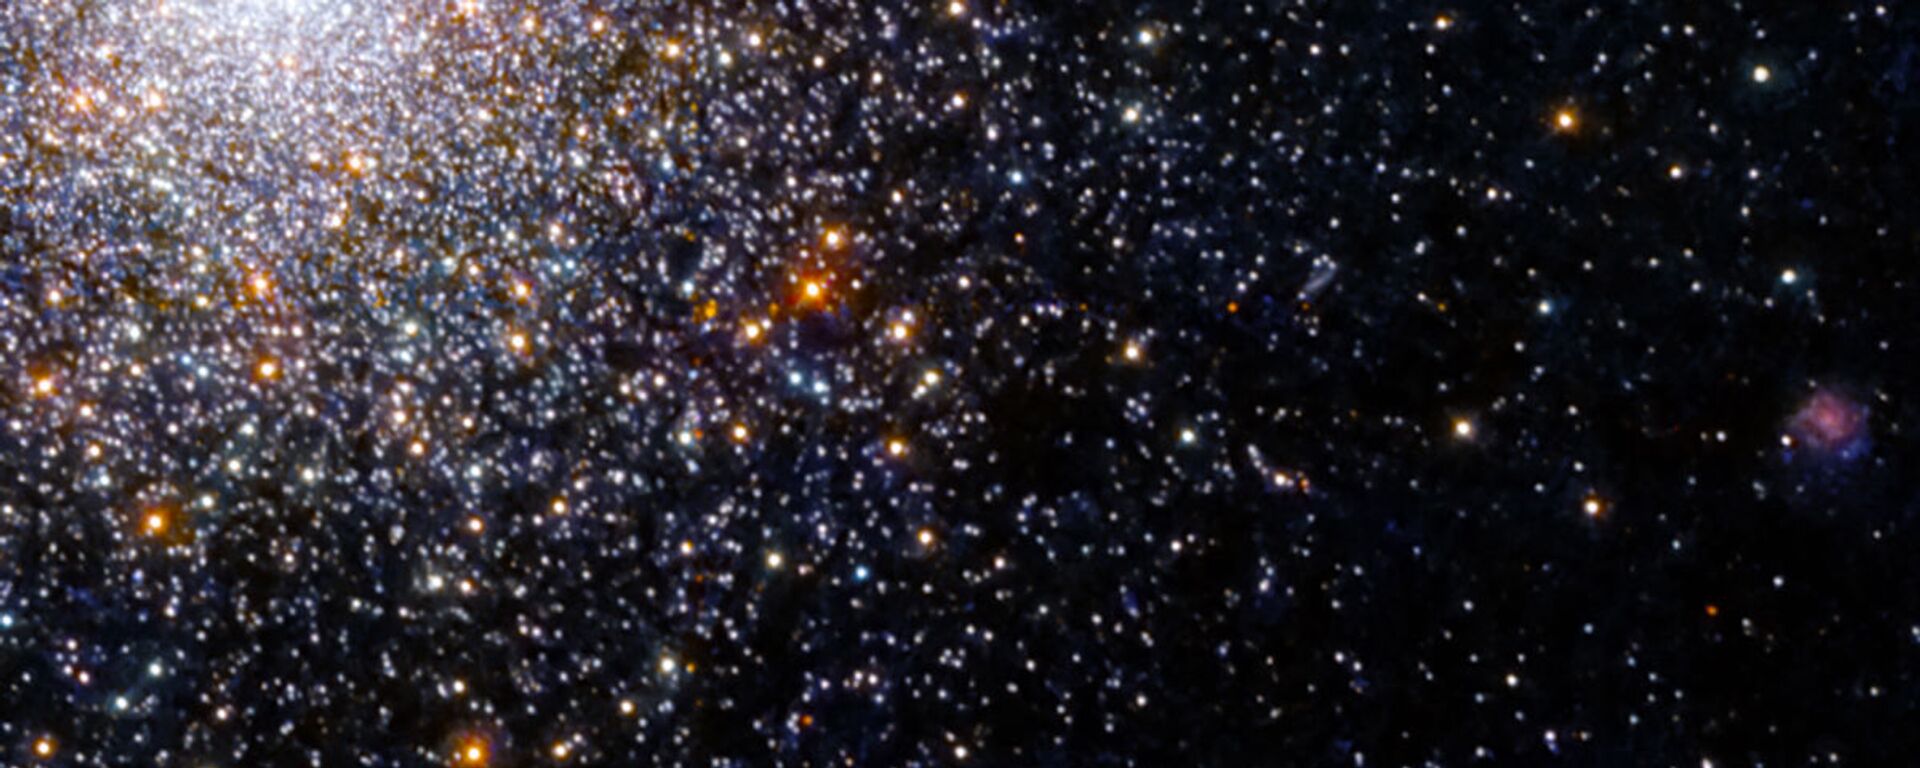 Шаровое скопление  NGC 5694 в созвездии Гидра - Sputnik Армения, 1920, 12.10.2021